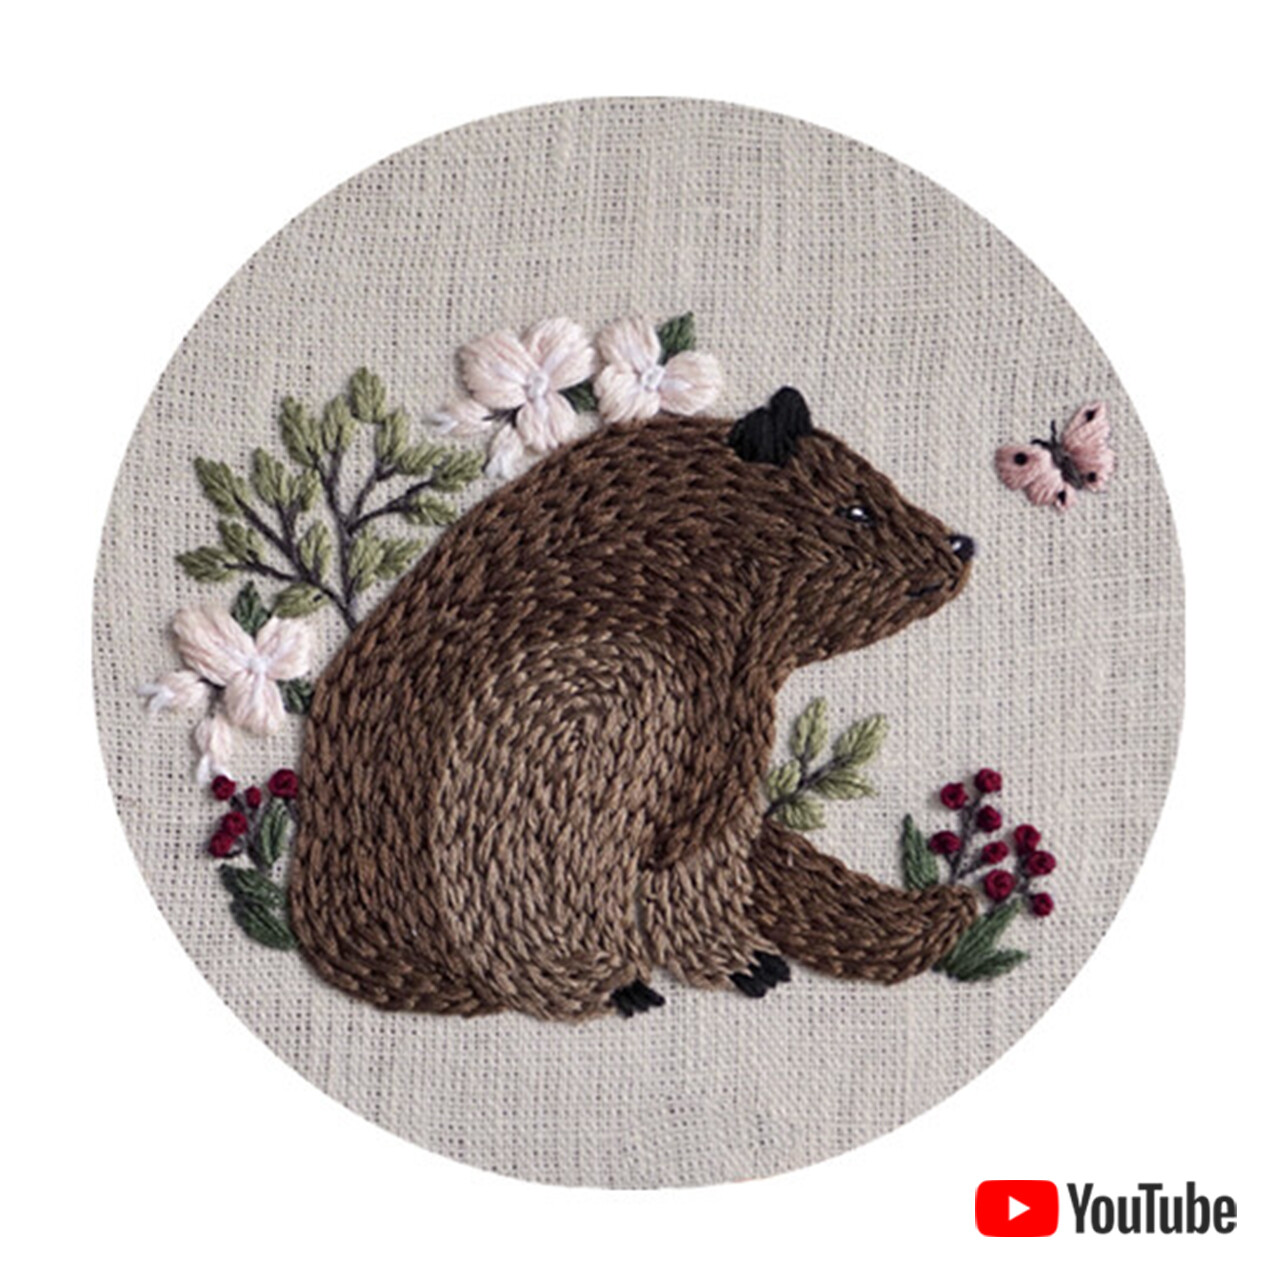 Схема для вышивки+ видео урок "Медведь и бабочка"